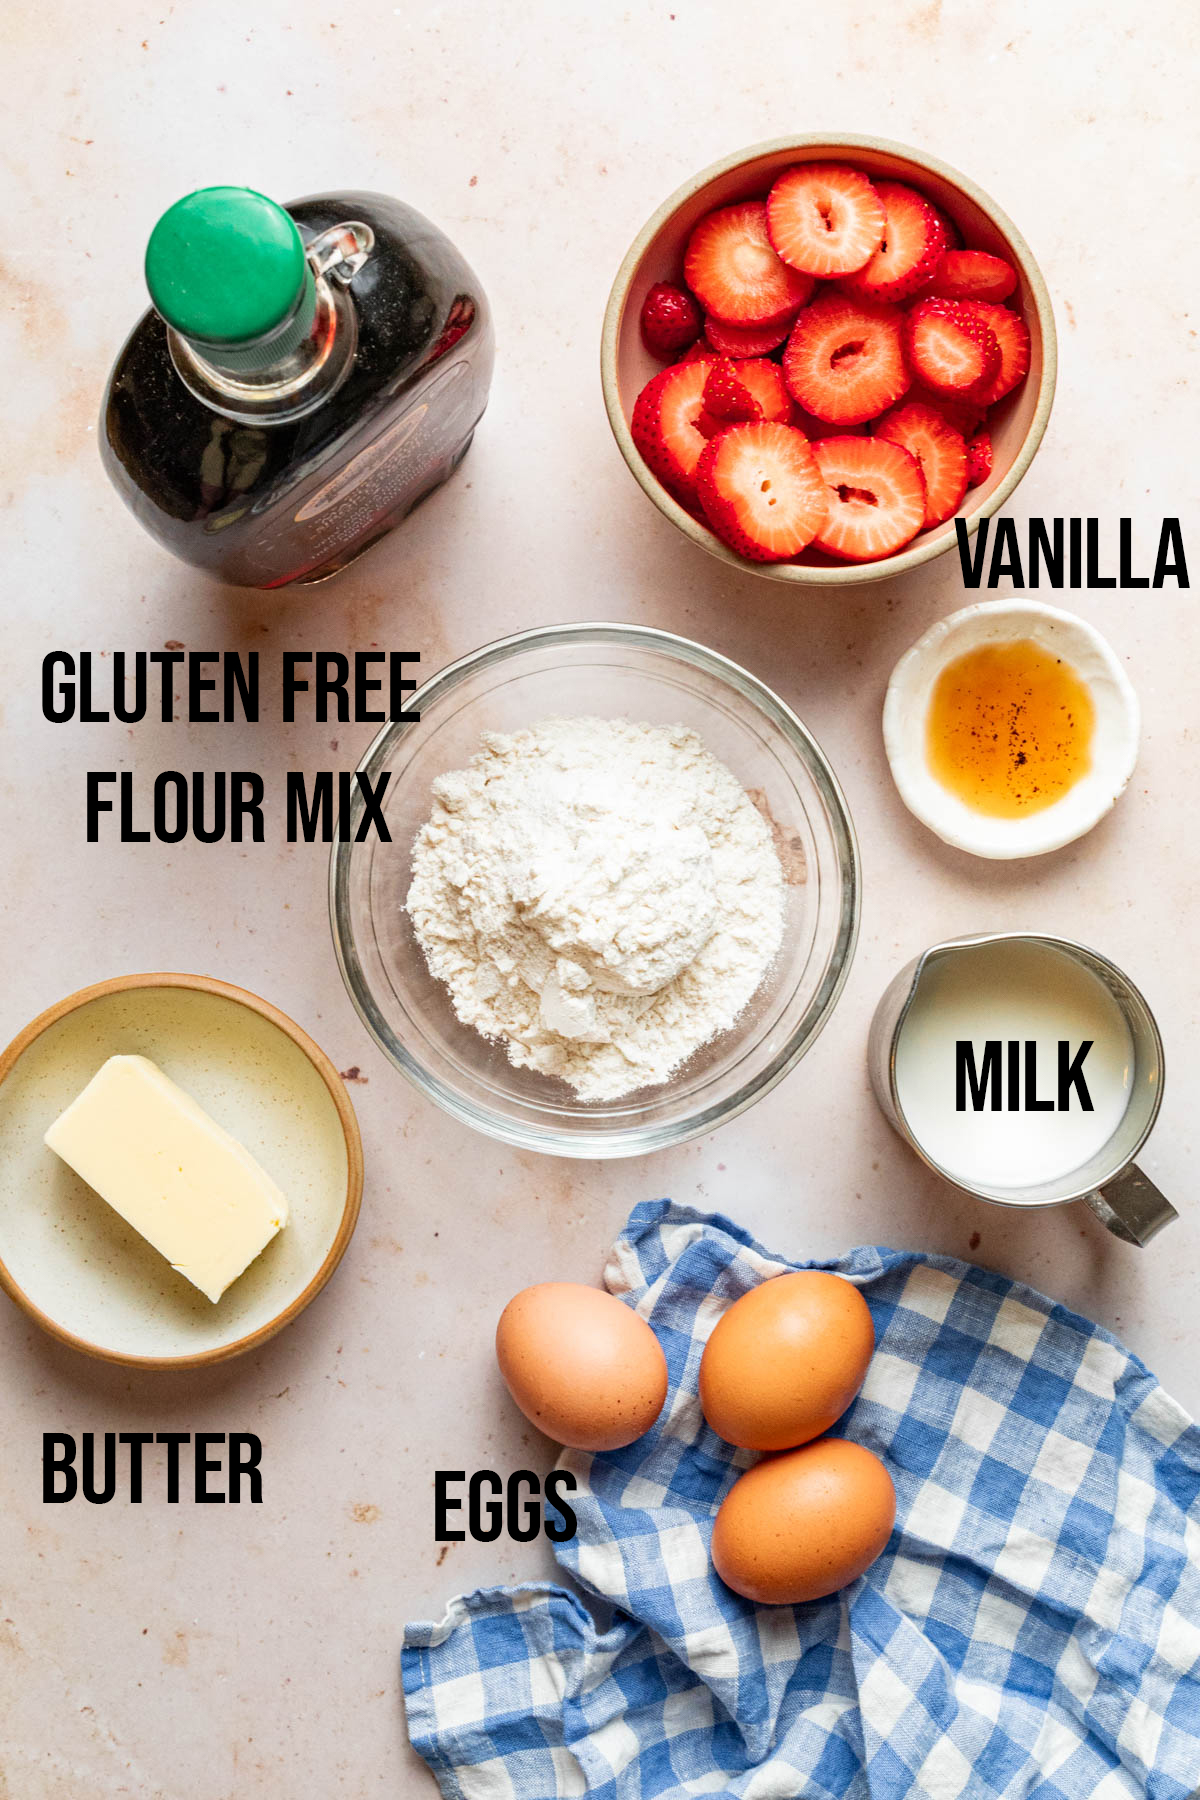 Ingredients to make a gluten-free Dutch Baby.